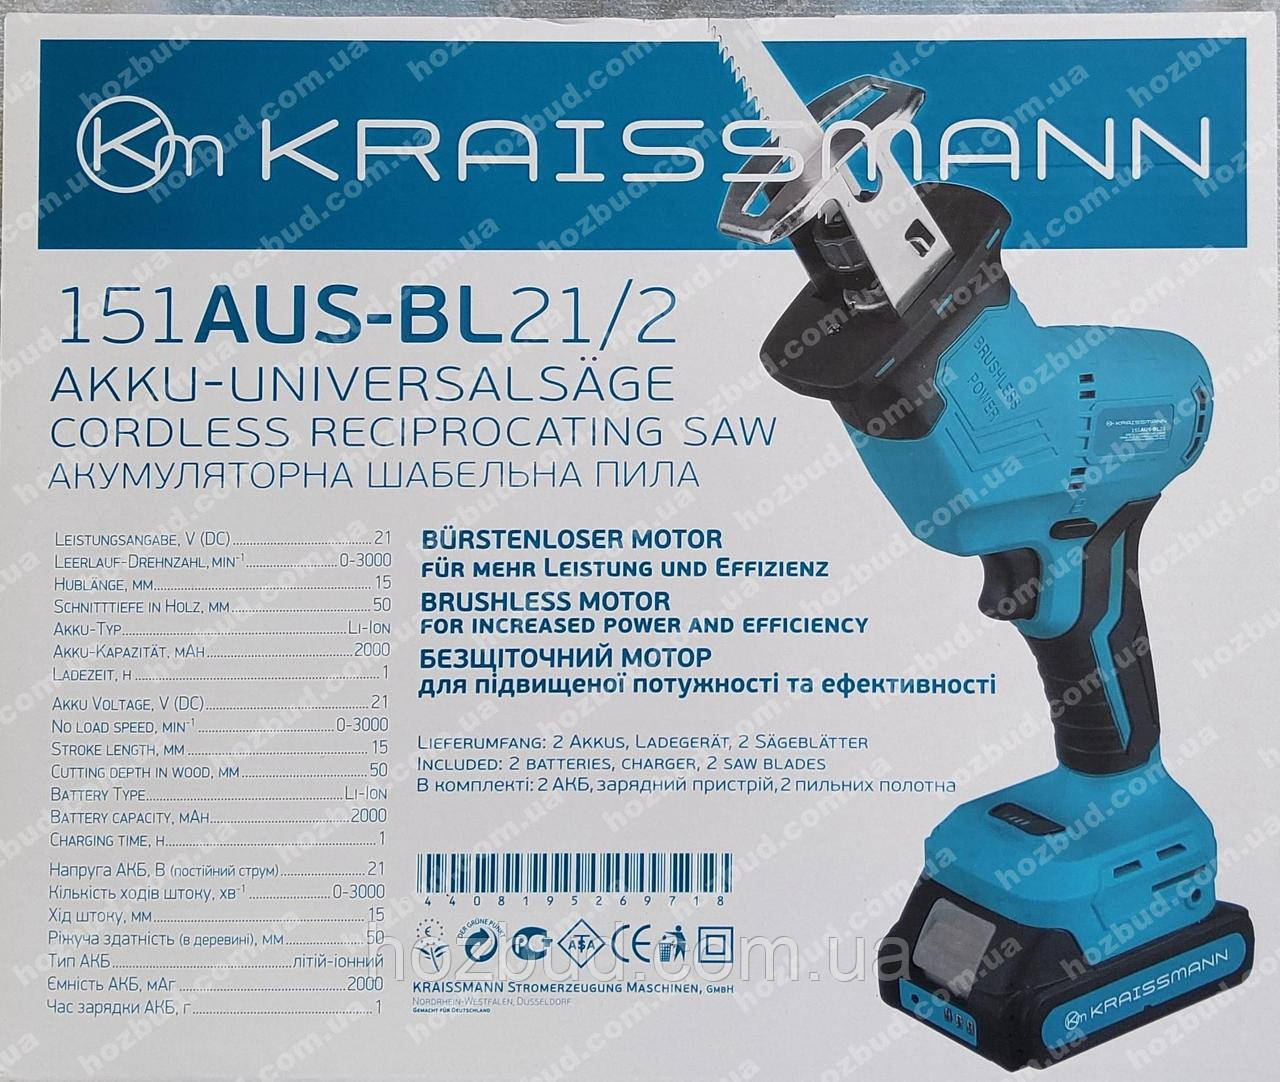 Шабельна пила Kraissmann 151АUS-BL21/2 (21 V)